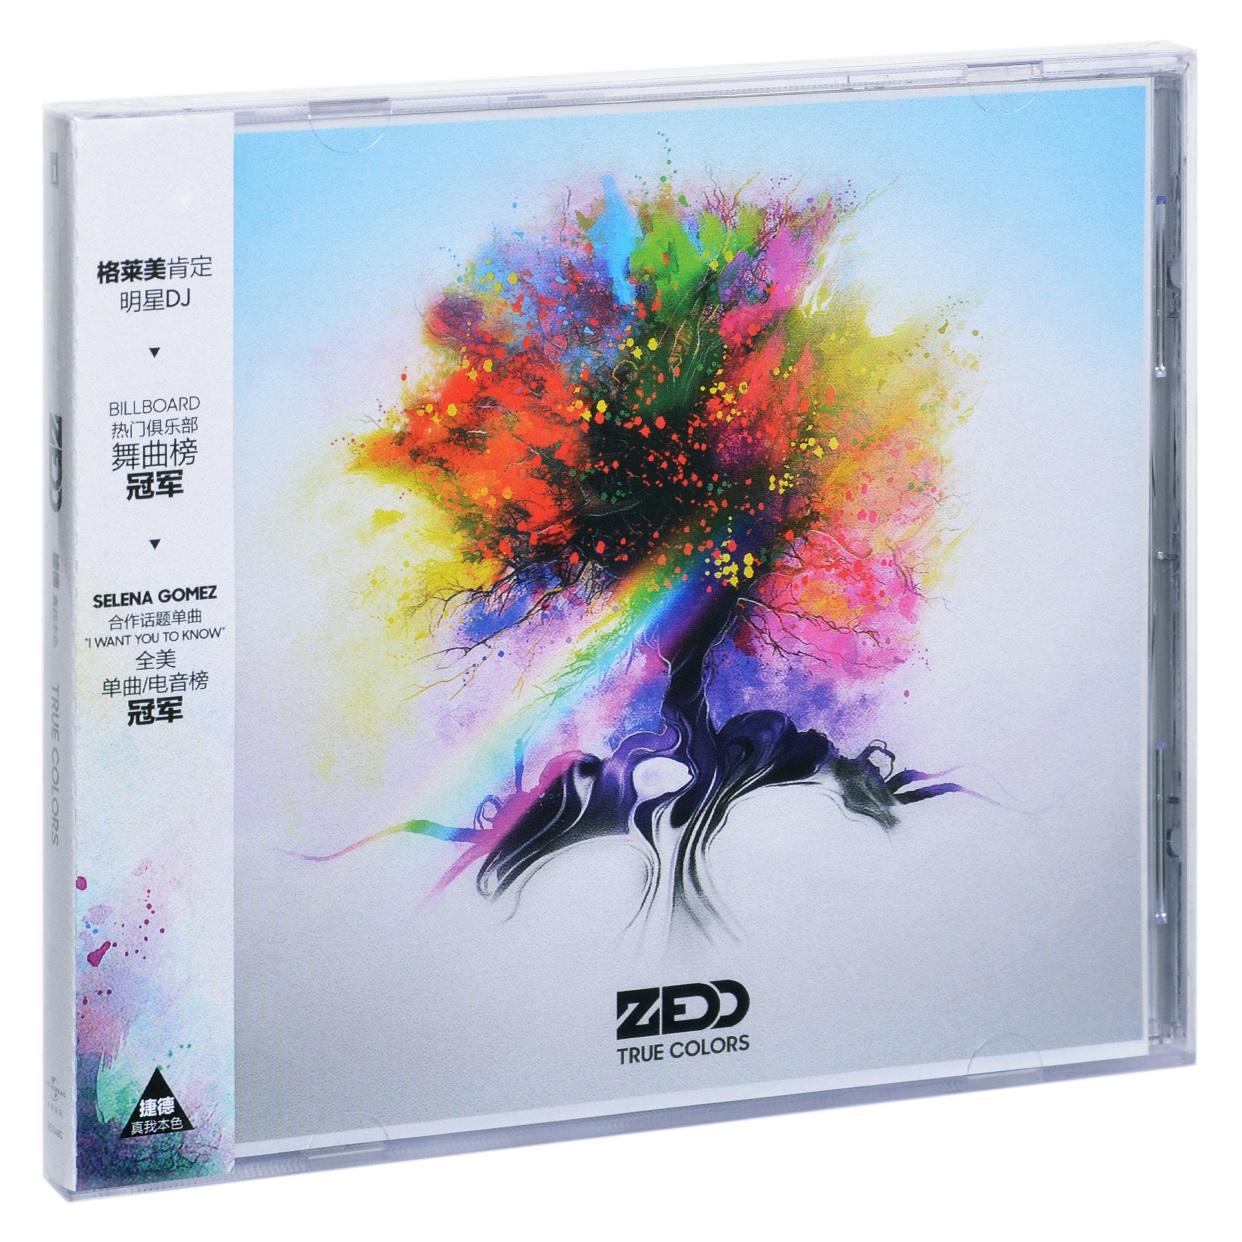 正版百大DJ 捷德 真我本色 2015专辑 Zedd True Colors CD碟片